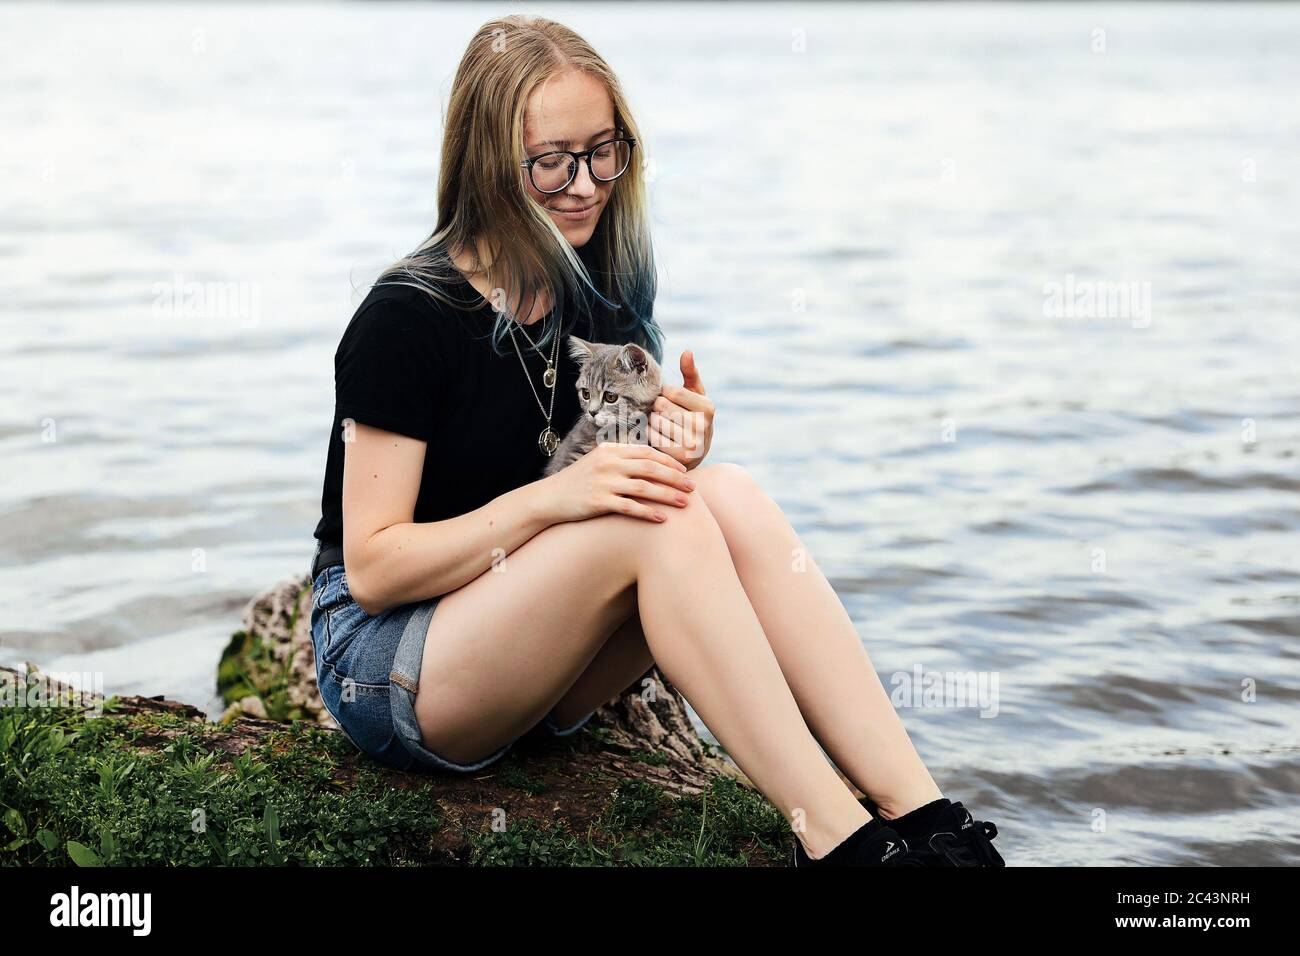 Jeune femme blonde aux cheveux bleus, portant des lunettes, un short en  denim et un t-shirt noir. Assis sur un arbre flottant près du lac avec un  vieux de trois mois Photo